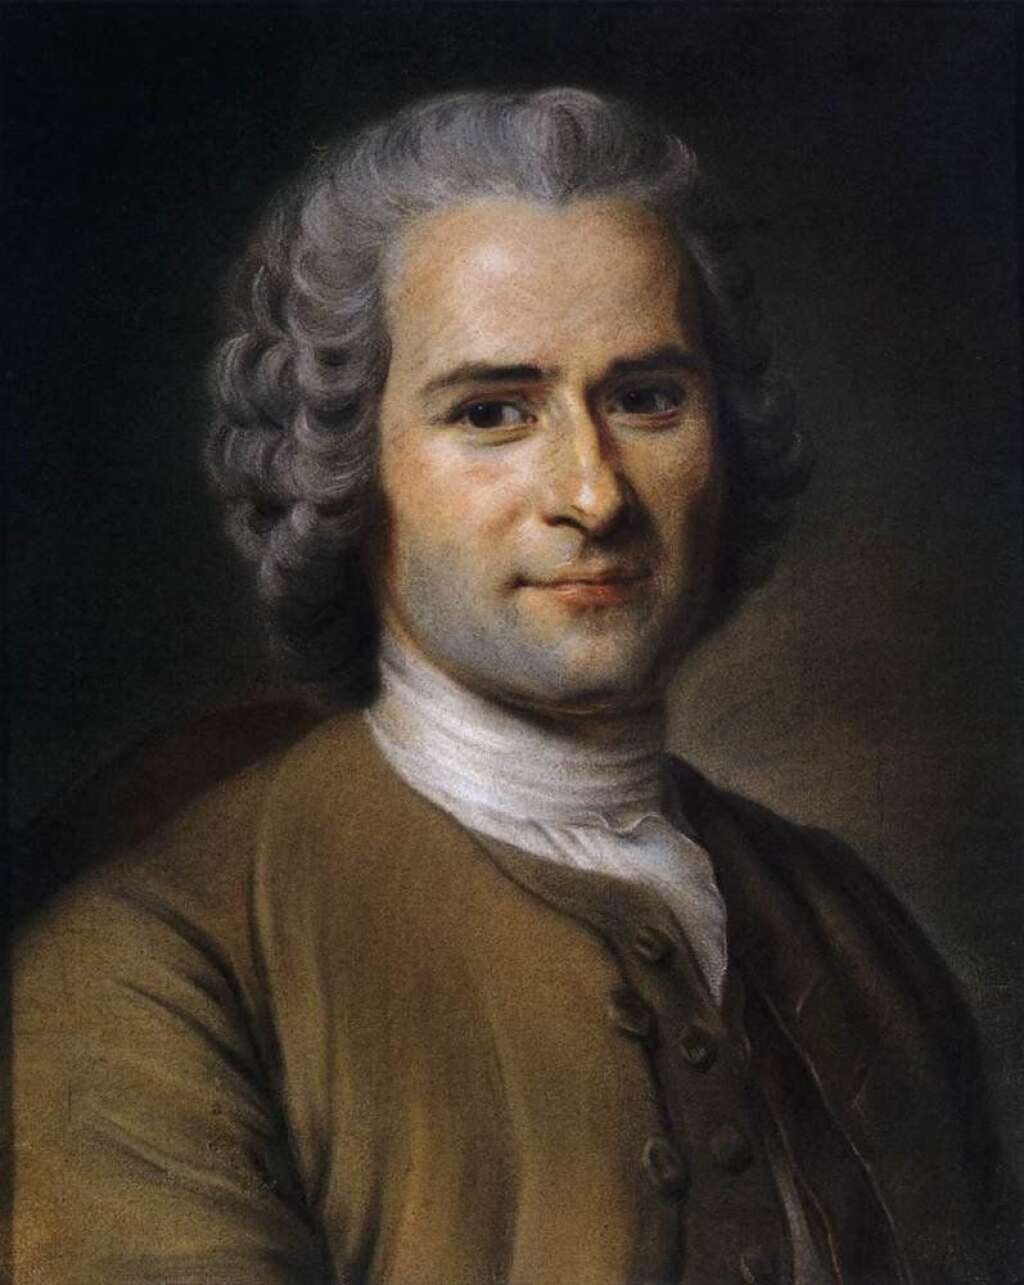 Jean-Jacques Rousseau (inhumé en 1949) - Ecrivain et philosophe des Lumières, grand inspirateur de la Révolution française.